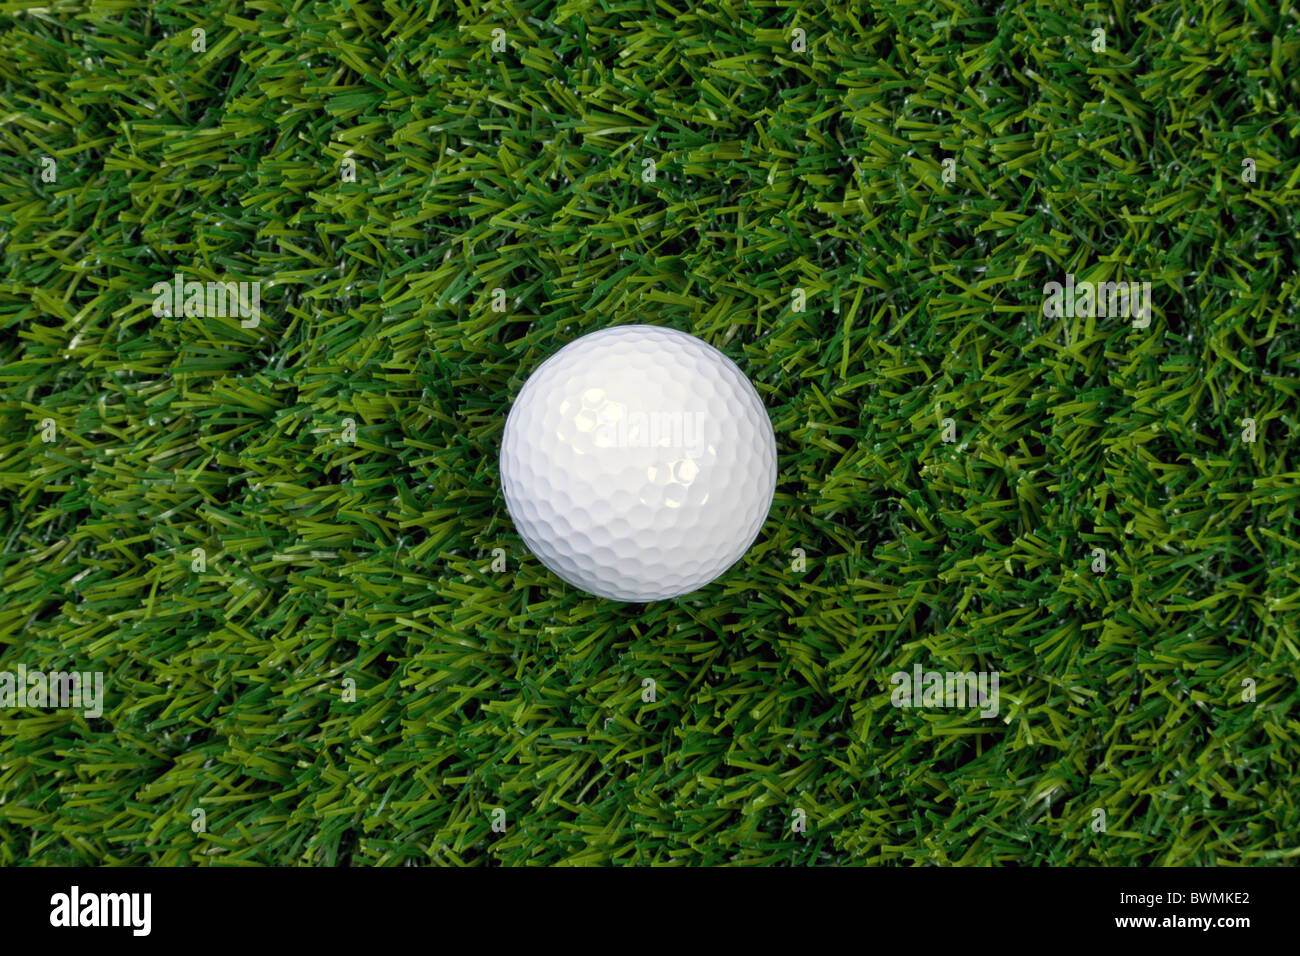 Une photo d'une balle de golf sur l'herbe Banque D'Images